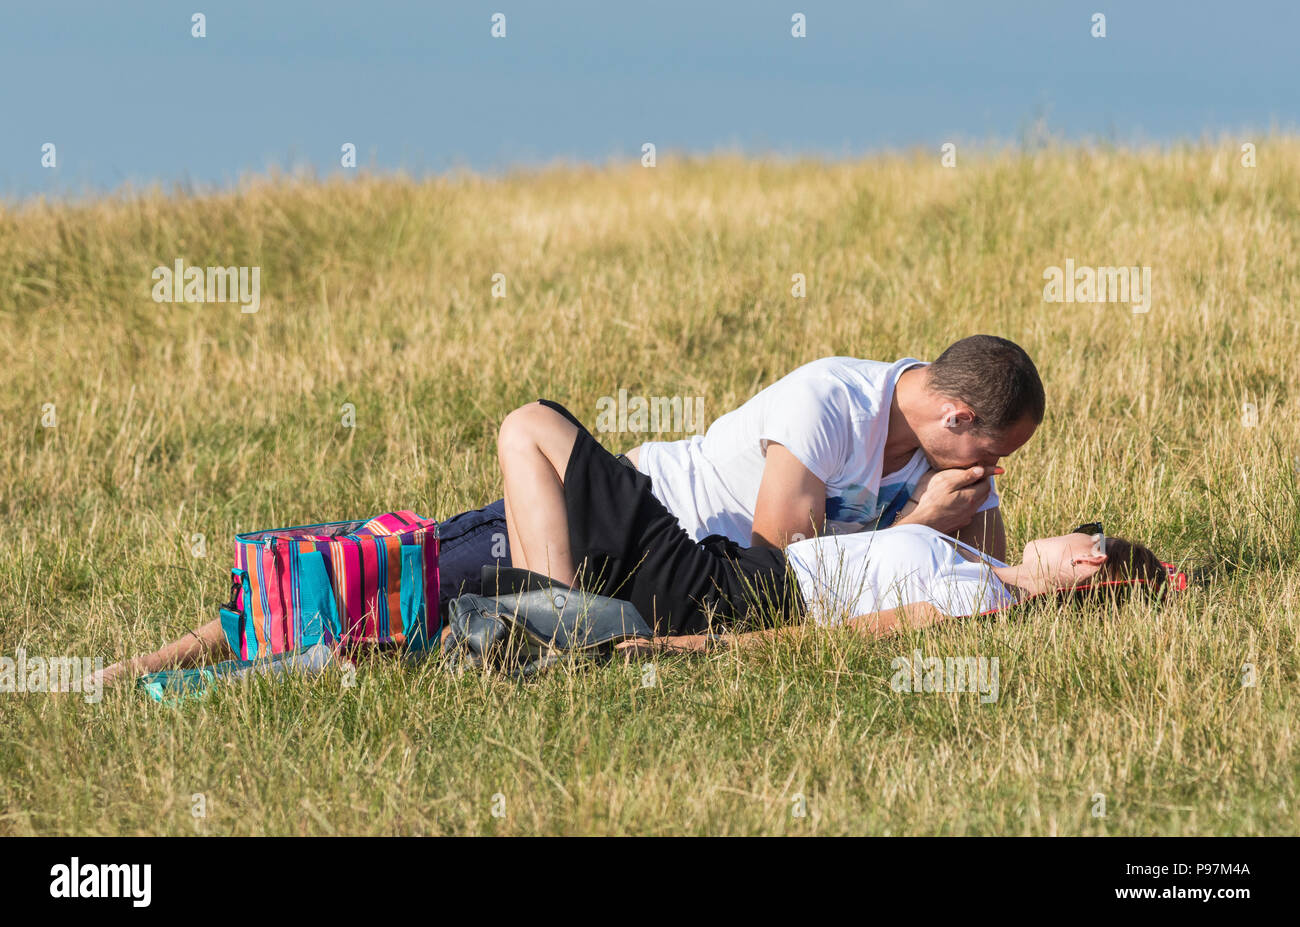 Hombre y mujer joven sentar juntos en un campo en una cálida noche de verano compartiendo un momento de intimidad. Pareja joven en el Reino Unido. Nota:no pueden ser una pareja. Foto de stock